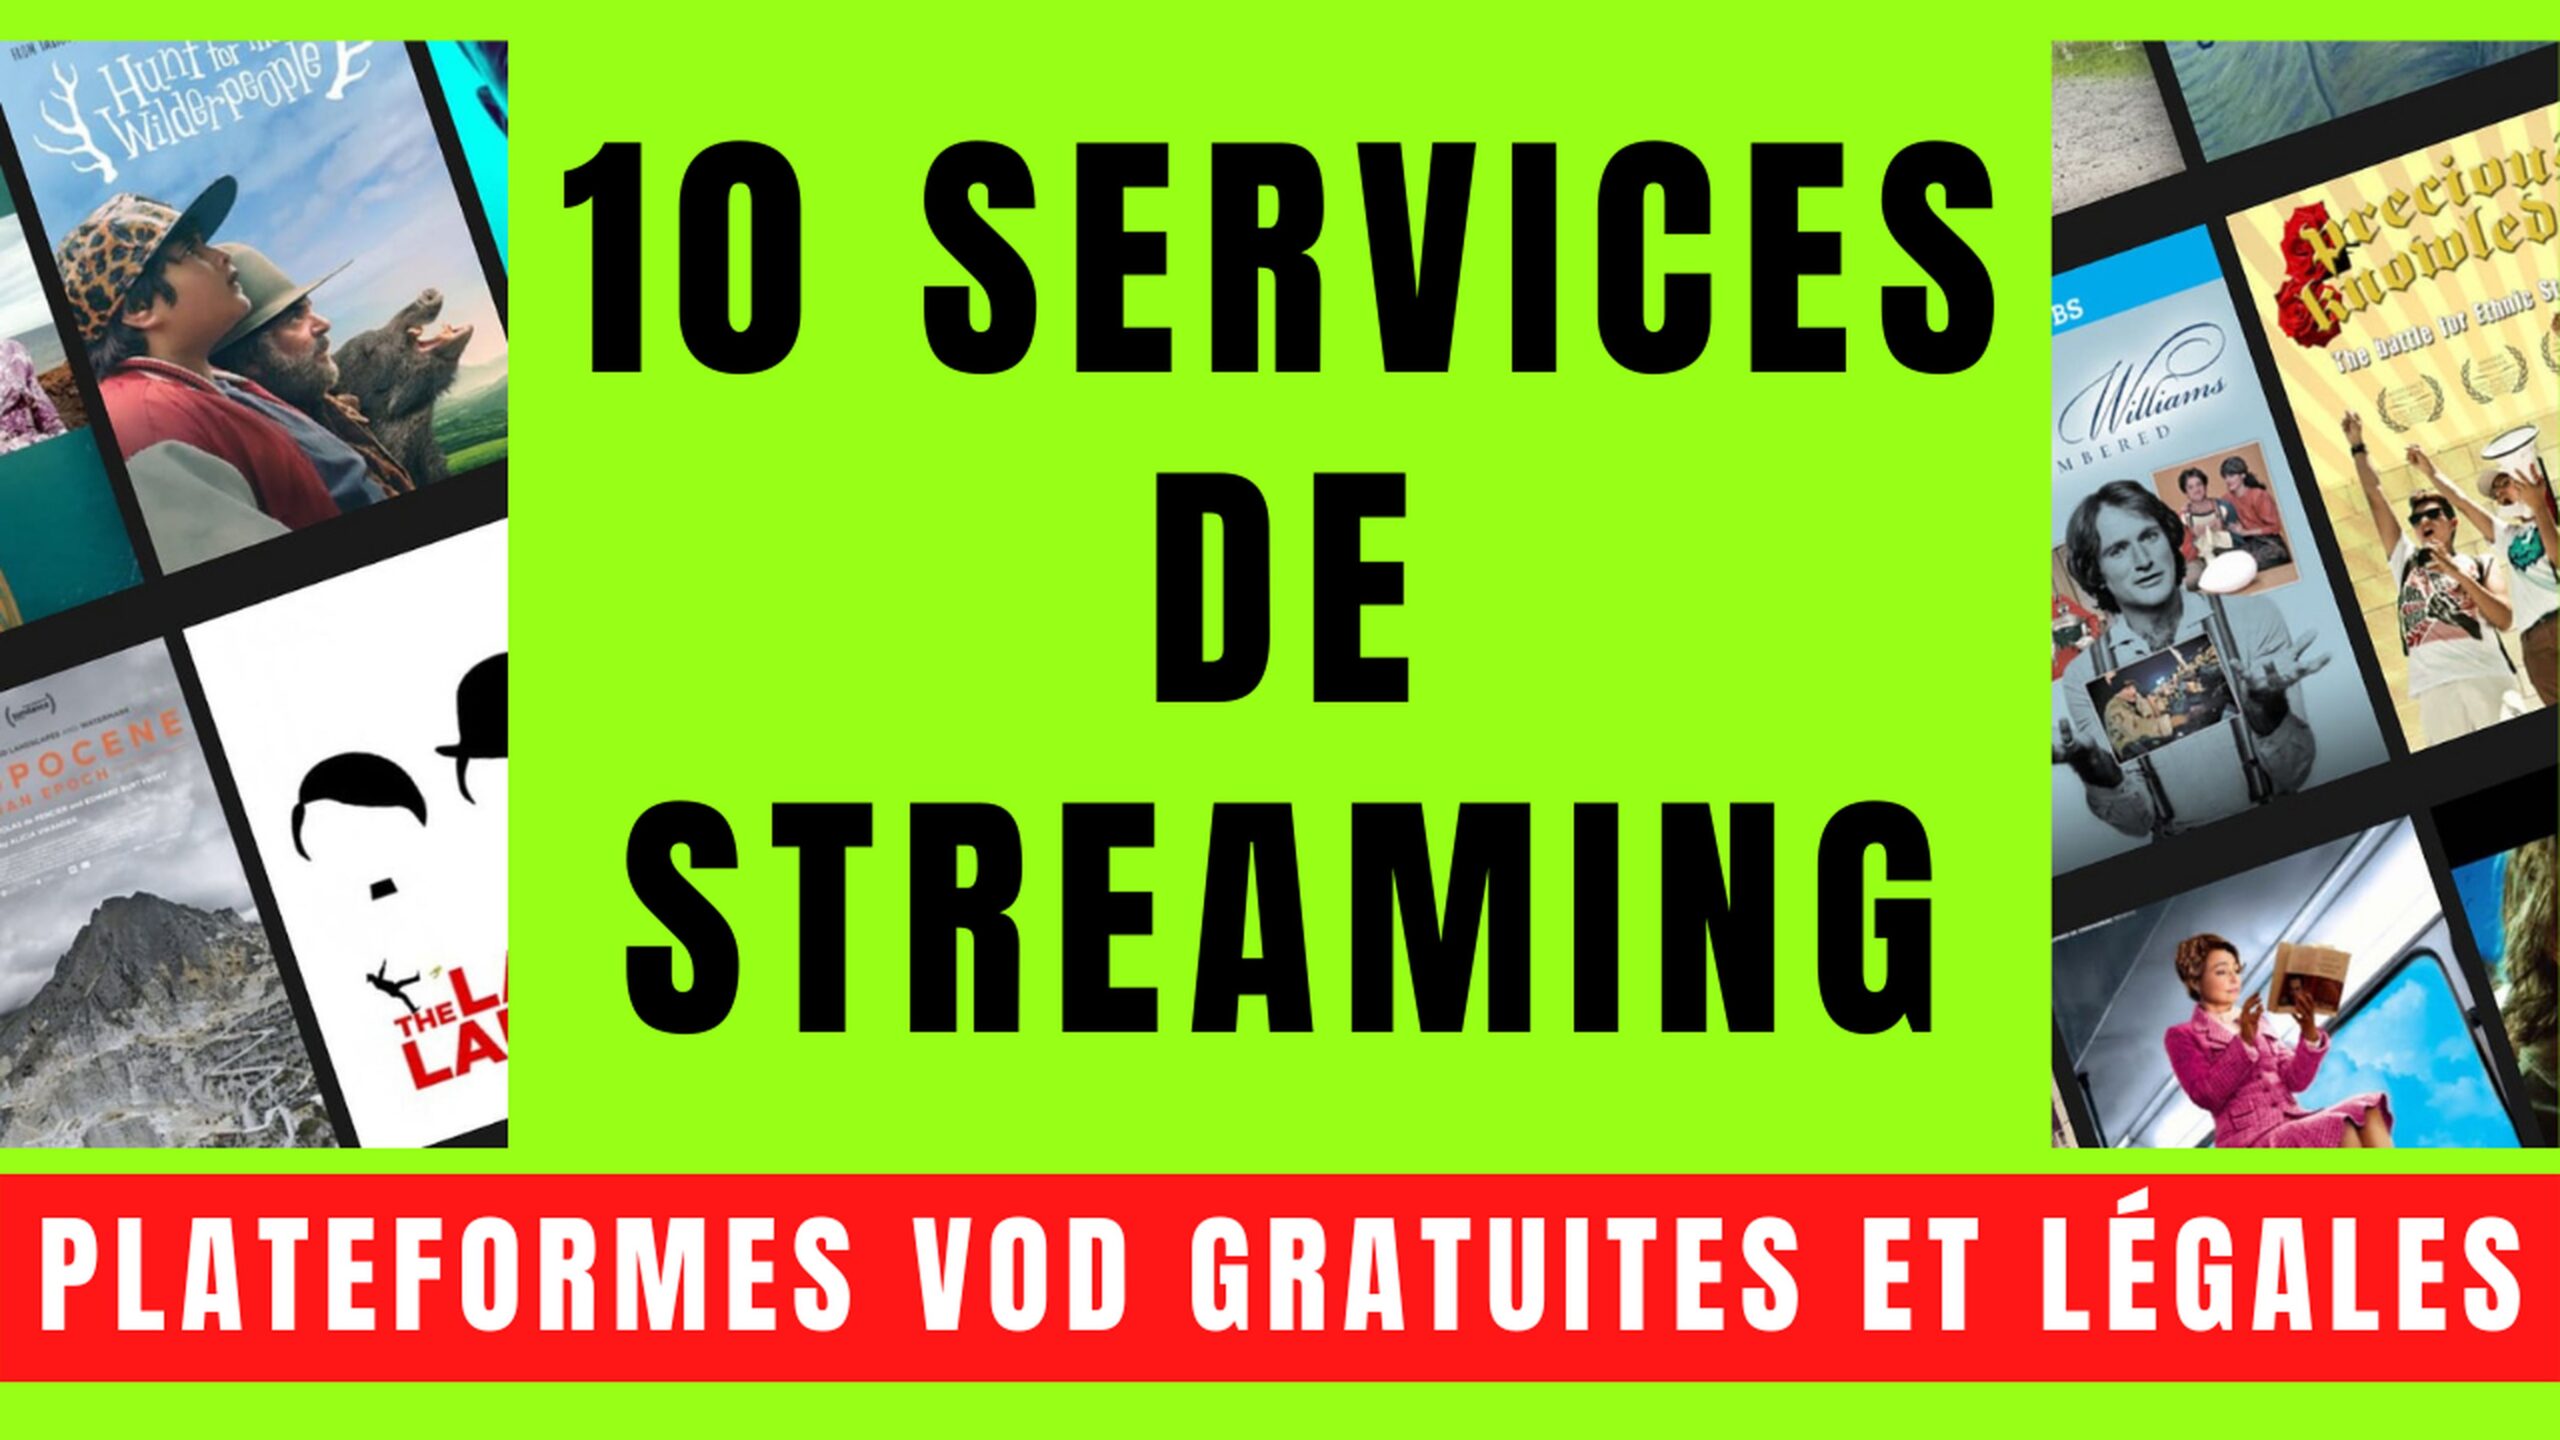 10 SERVICES VOD avec STREAMING GRATUIT et LÉGAL 2